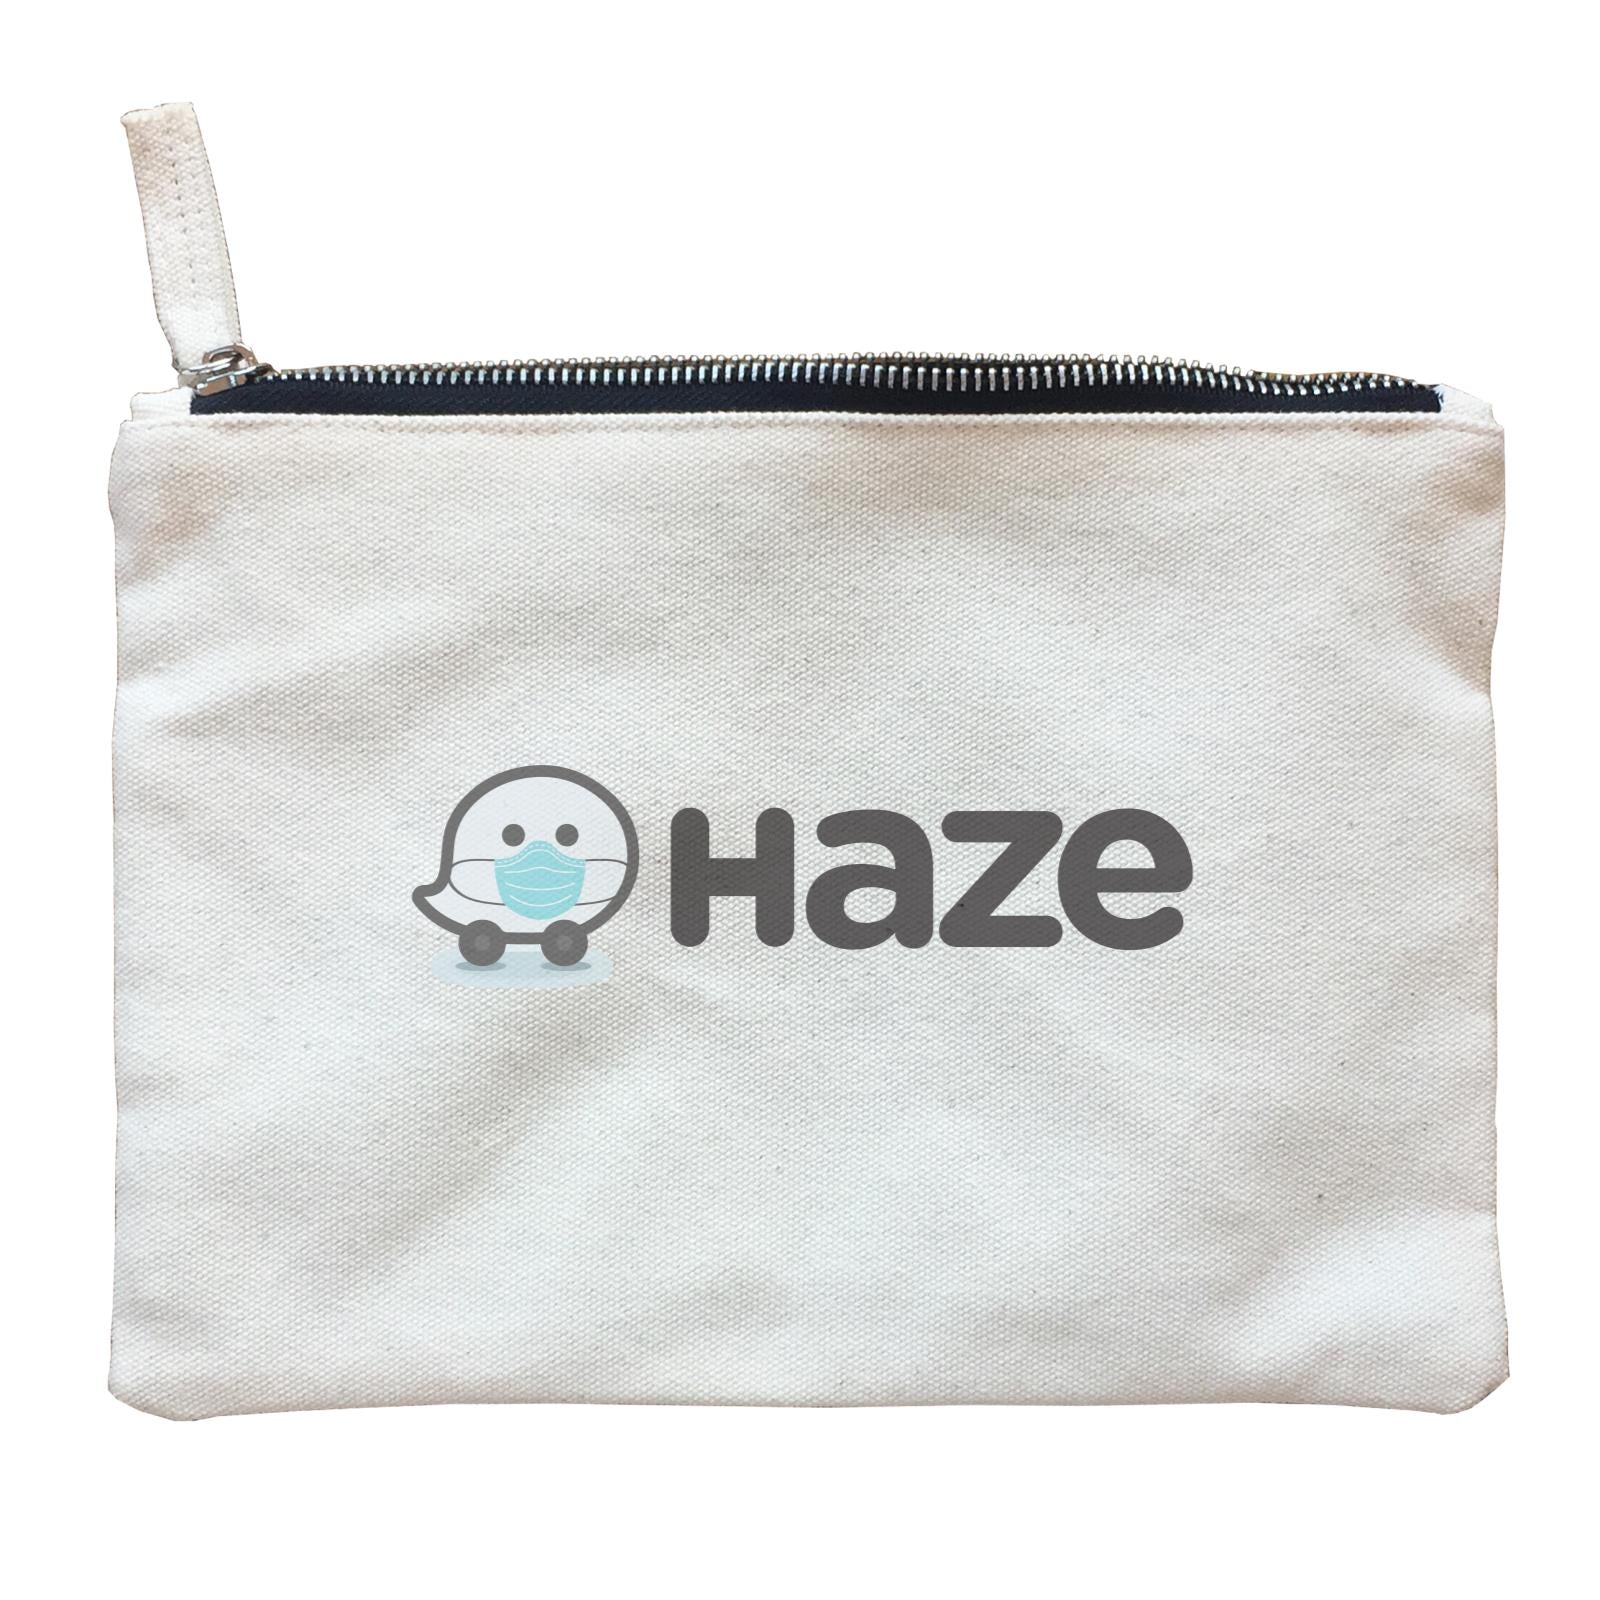 Slang Statement Haze Accessories Zipper Pouch